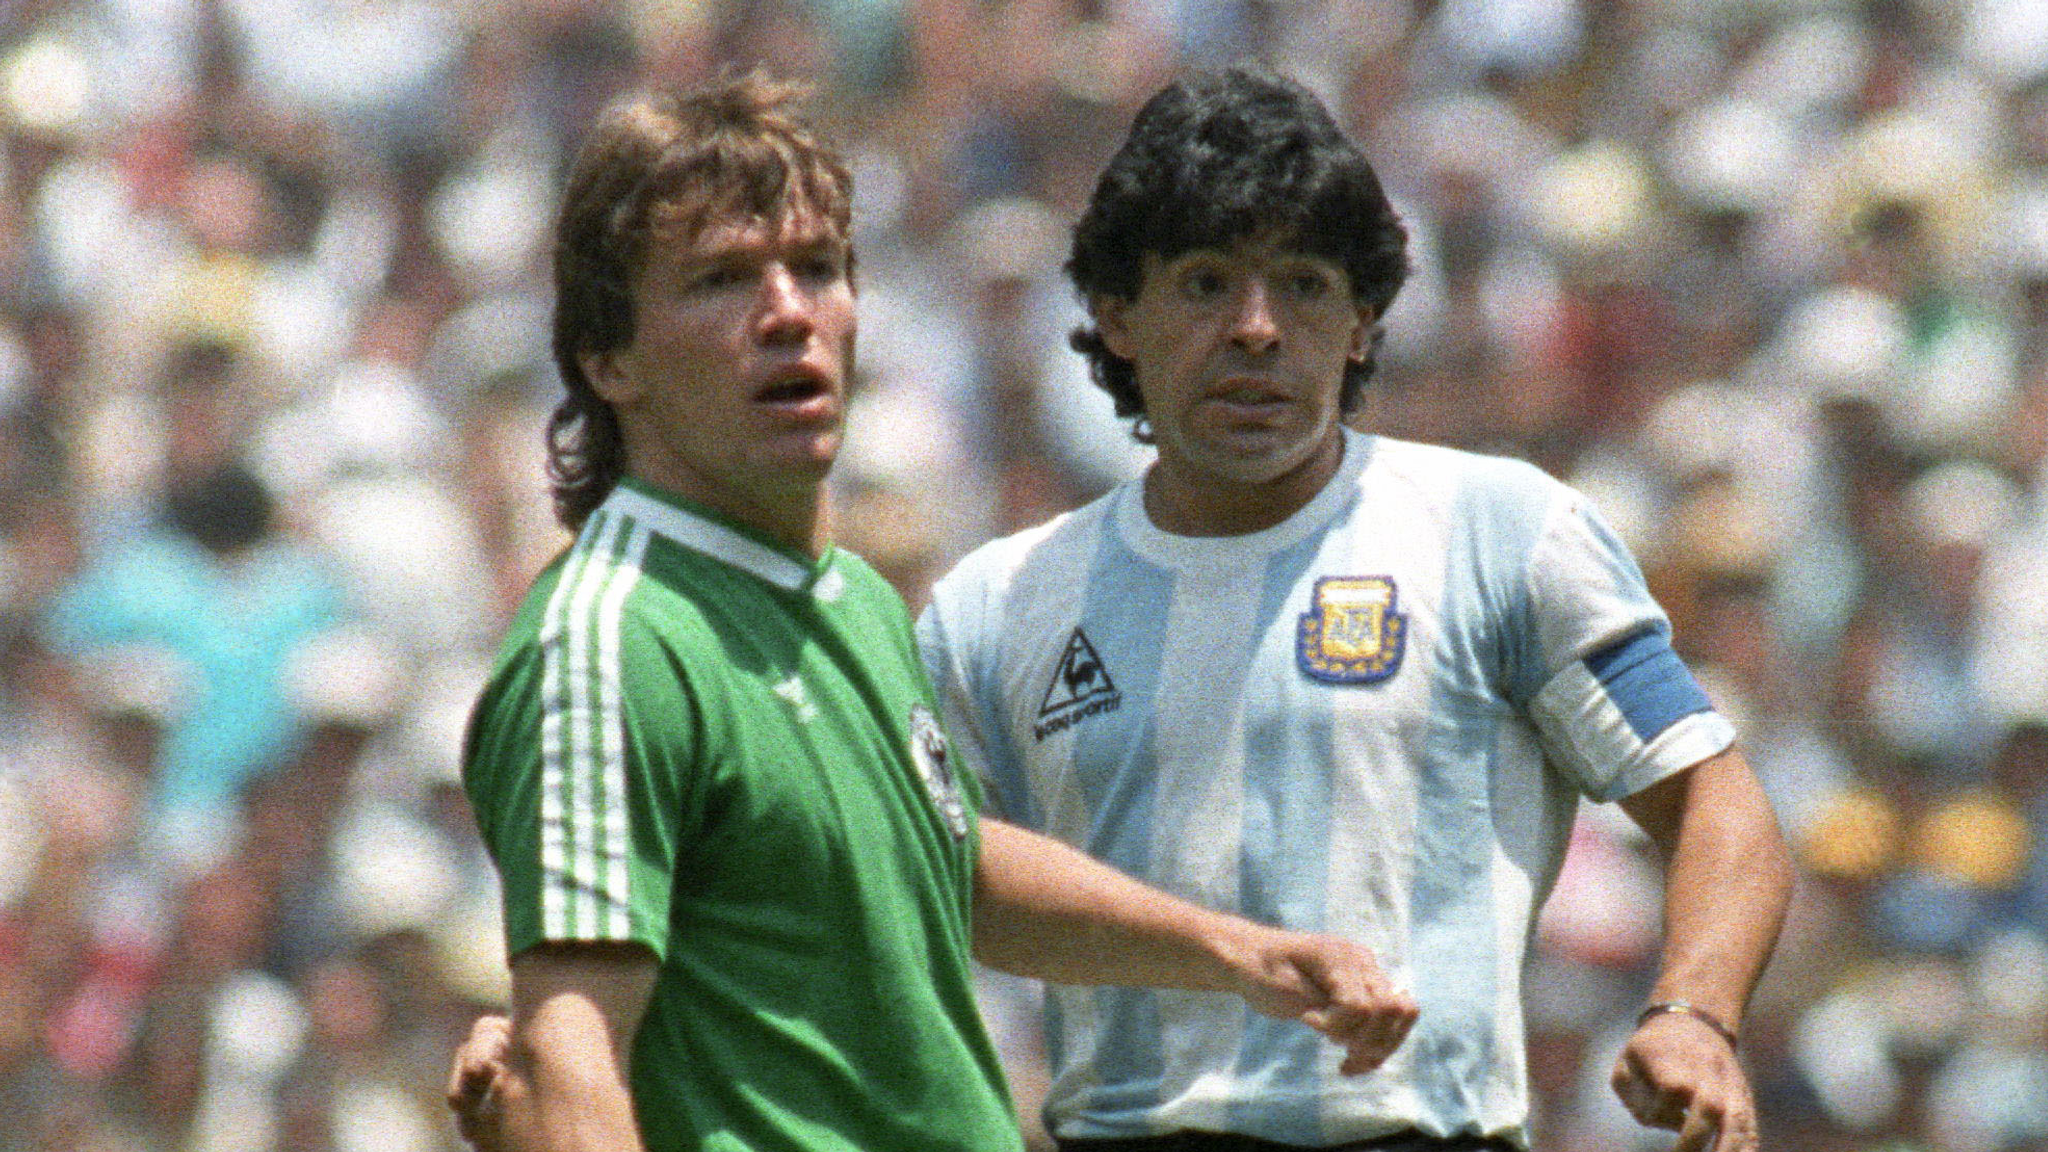 1986 México WC Argentina Away Jersey Maradona